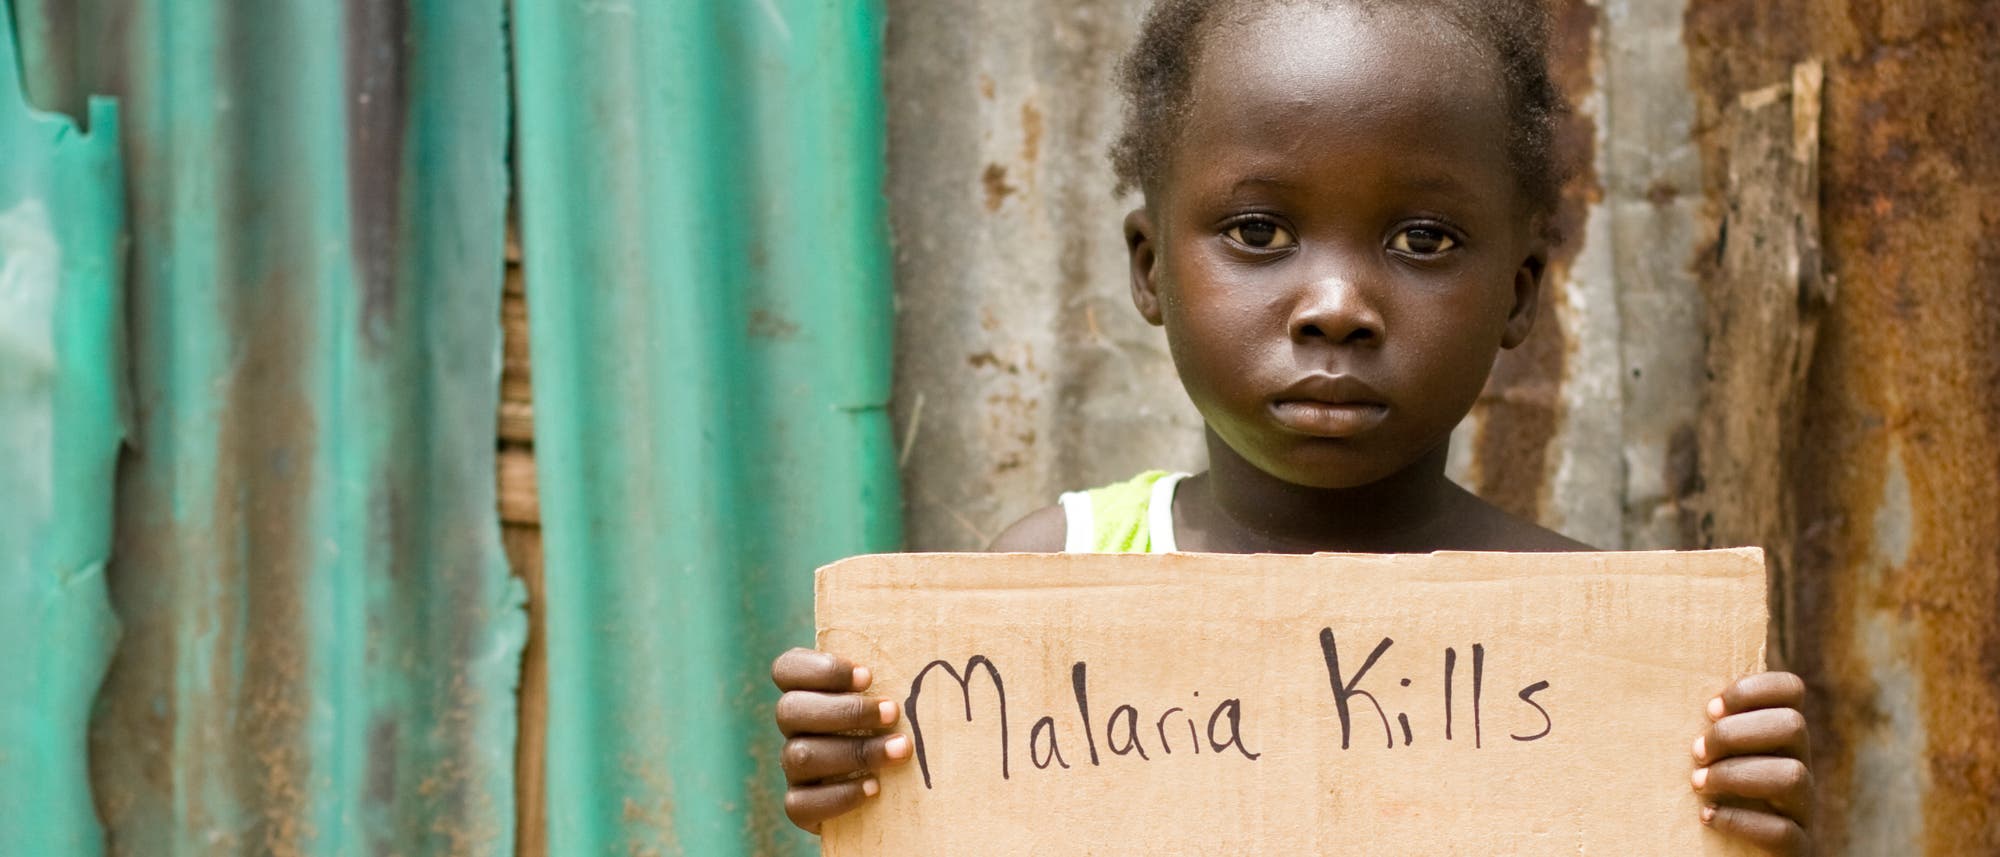 Ein afrikanisches Kind hält ein Schild mit der Aufschrift "Malaria Kills" (Malaria tötet) hoch.